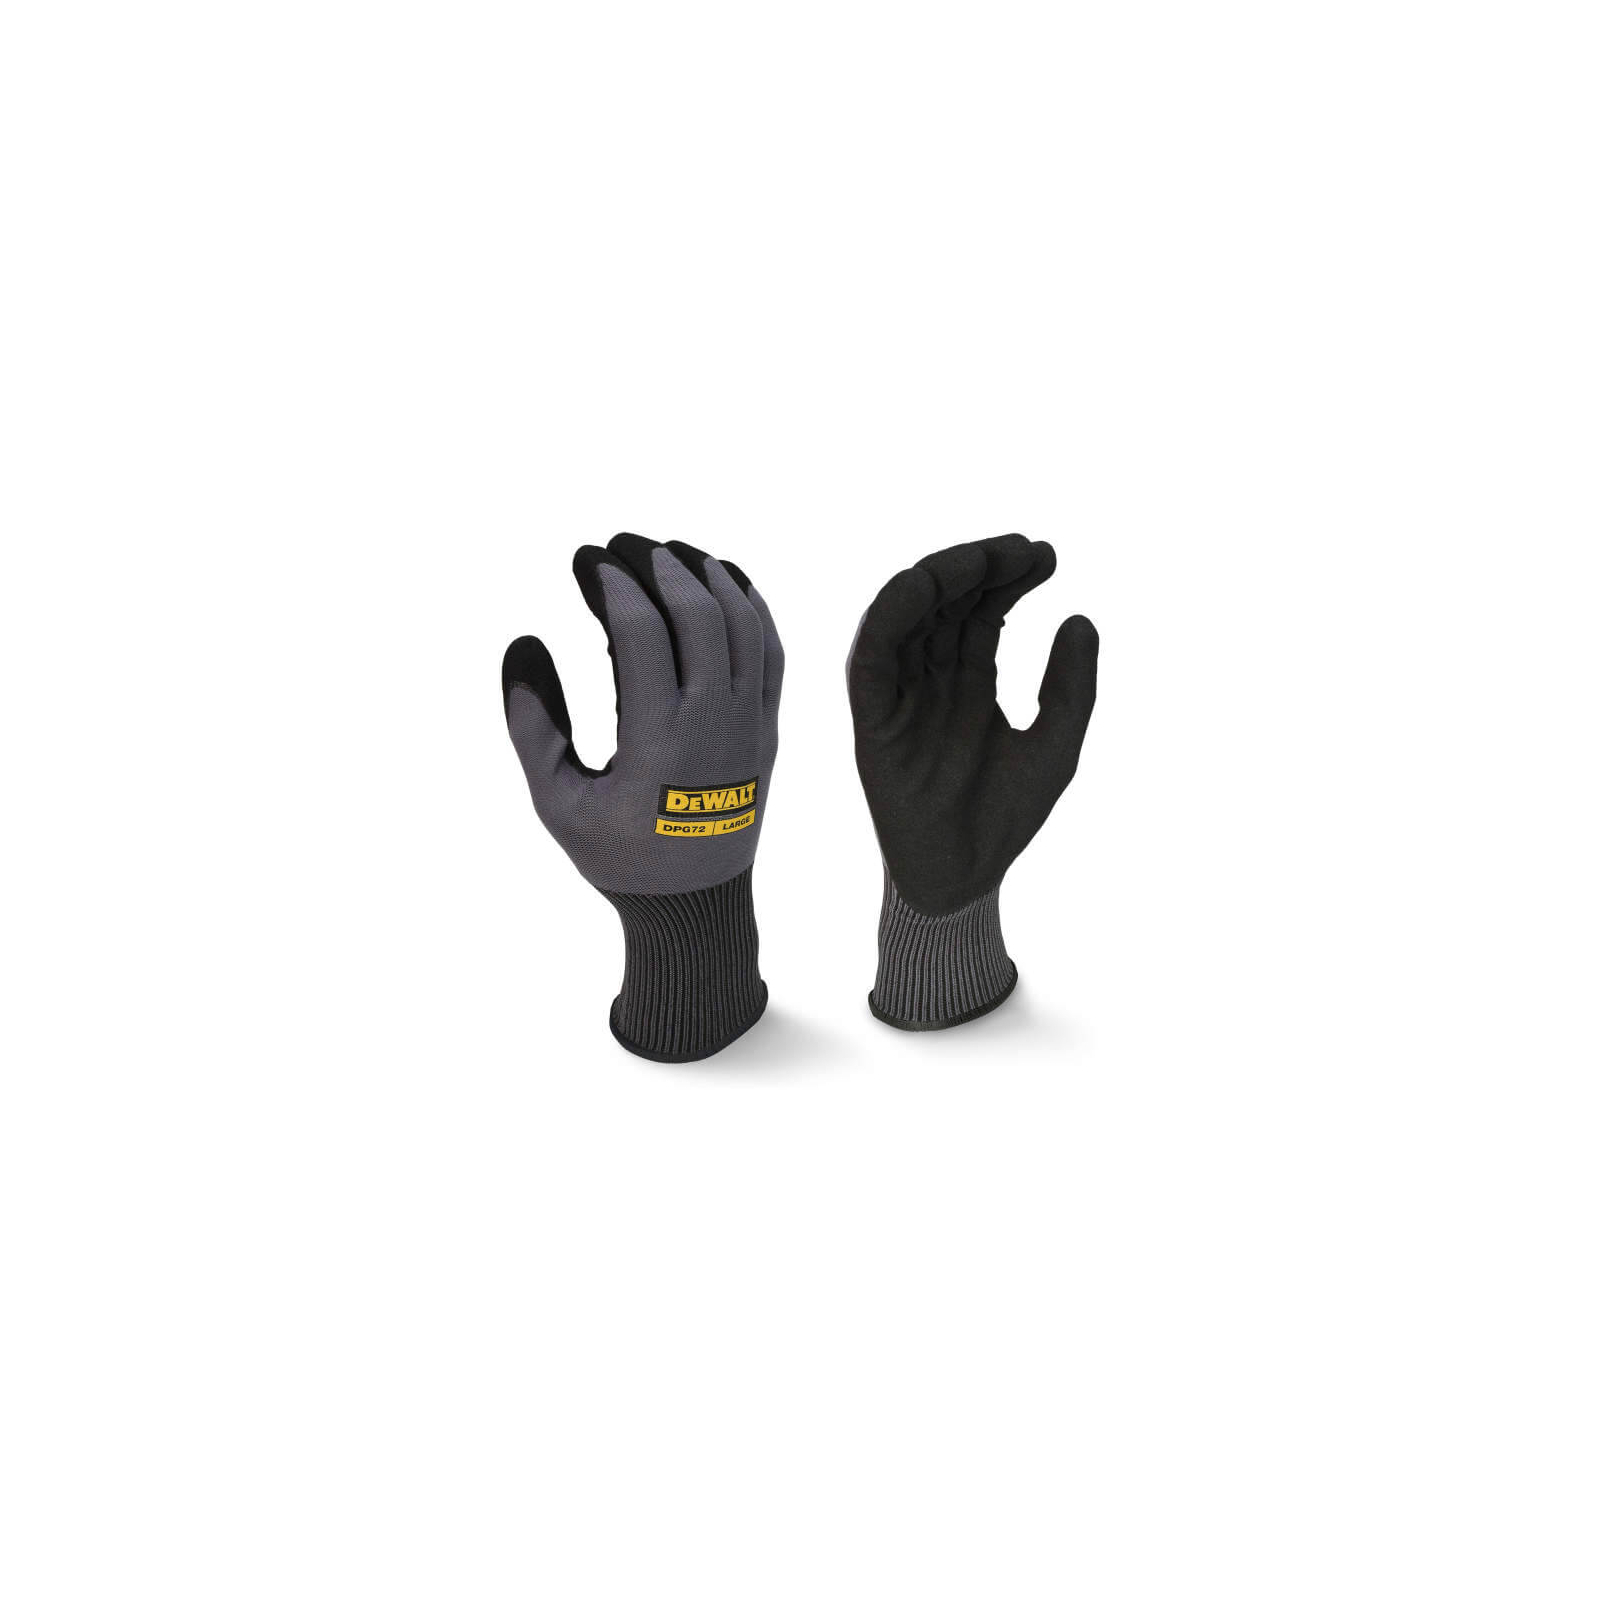 Защитные перчатки DeWALT универсальные, разм. L/9 (DPG72L)